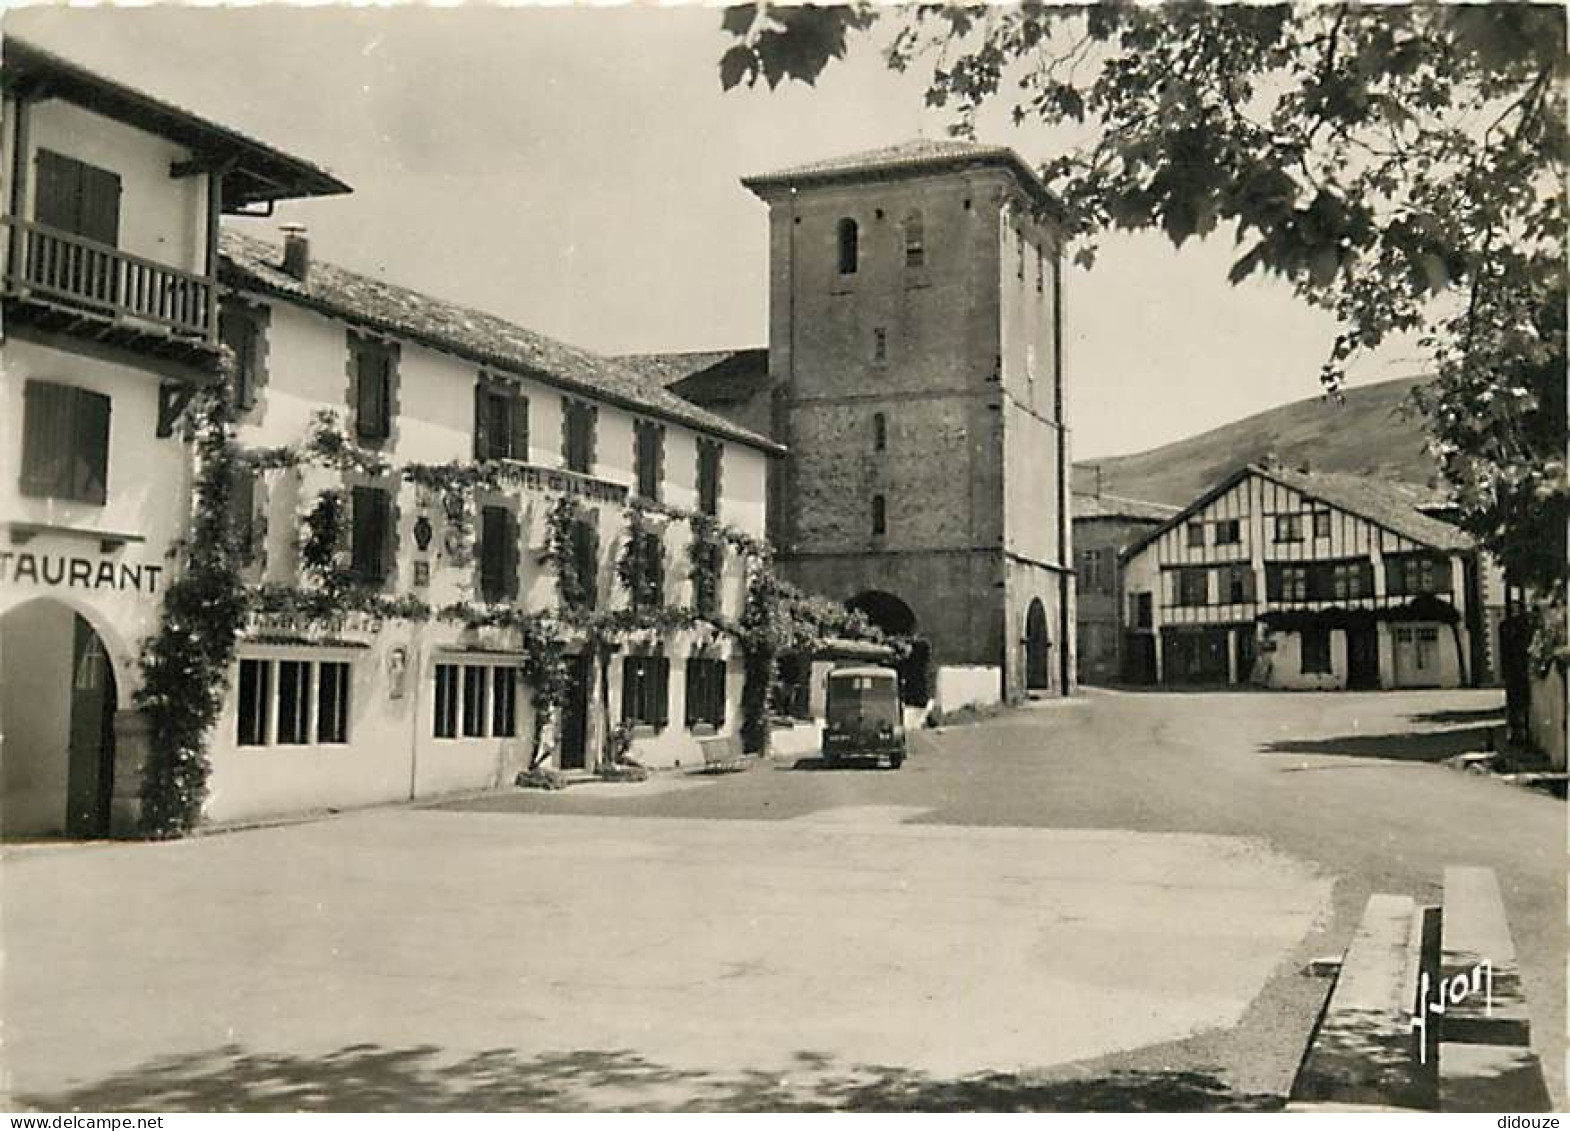 64 - Ascain - La Place. L'Église Et L'Hôtel De La Rhune Où Pierre Loti écrivit Ramuntcho - Automobiles - CPSM Grand Form - Ascain